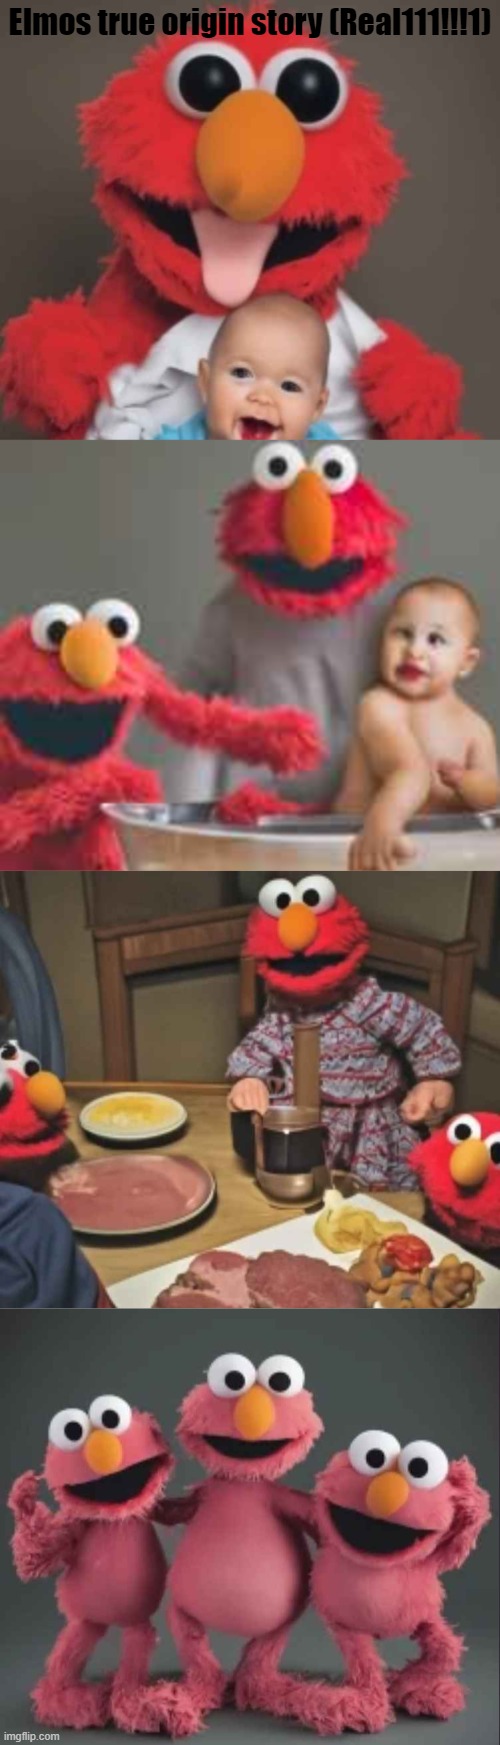 Babies taste the best! | Elmos true origin story (Real111!!!1) | image tagged in elmo,baby,food,food memes,funny | made w/ Imgflip meme maker